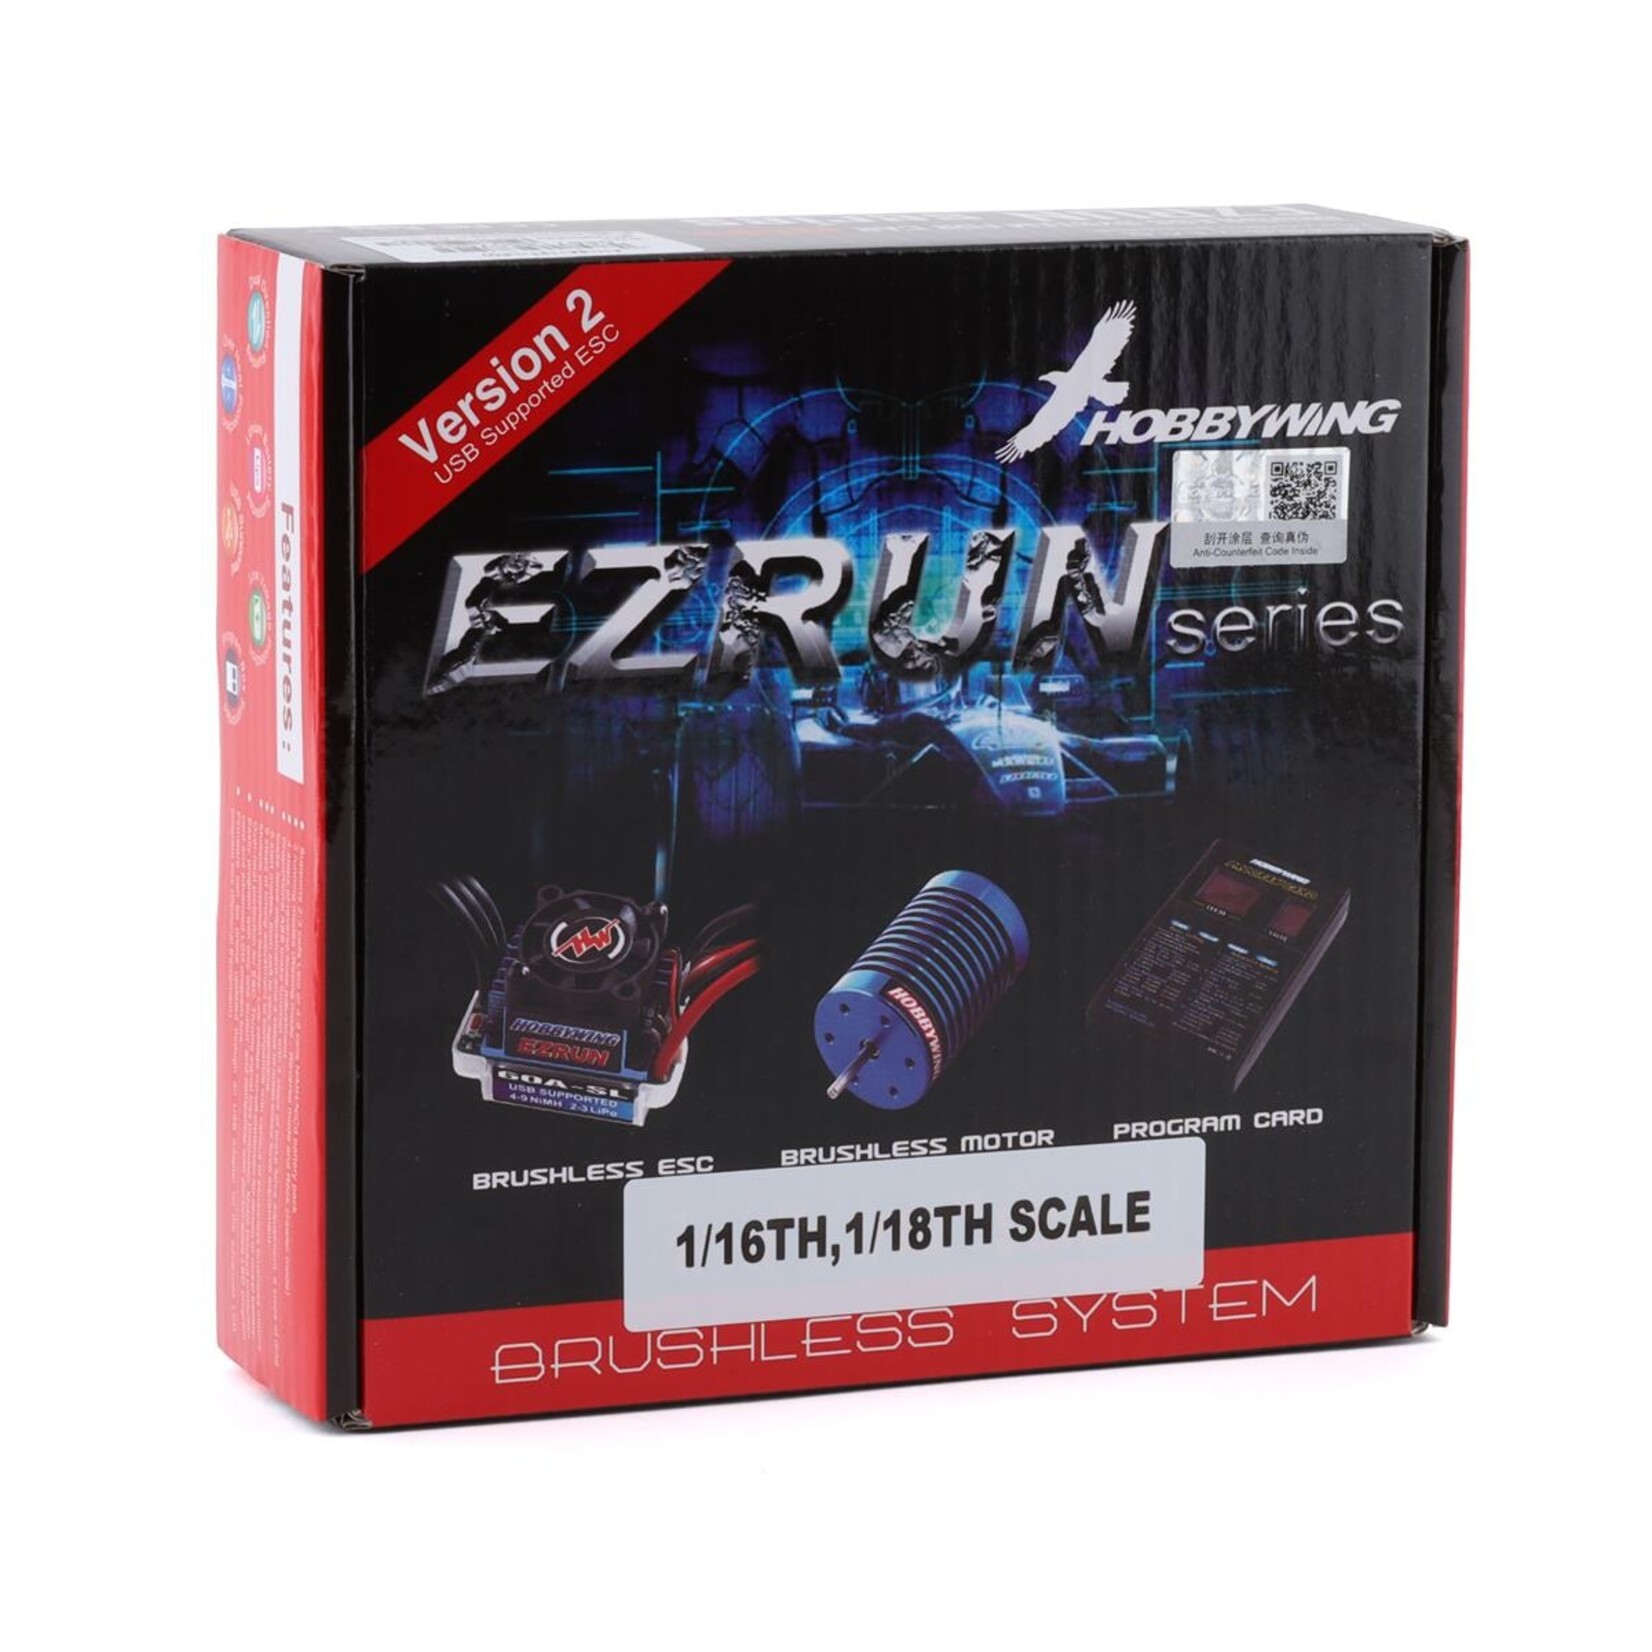 Hobbywing Hobbywing EZRun 18A Sensorless Brushless ESC/Motor Combo (12.0T/7800kV) w/Program Box #81030000